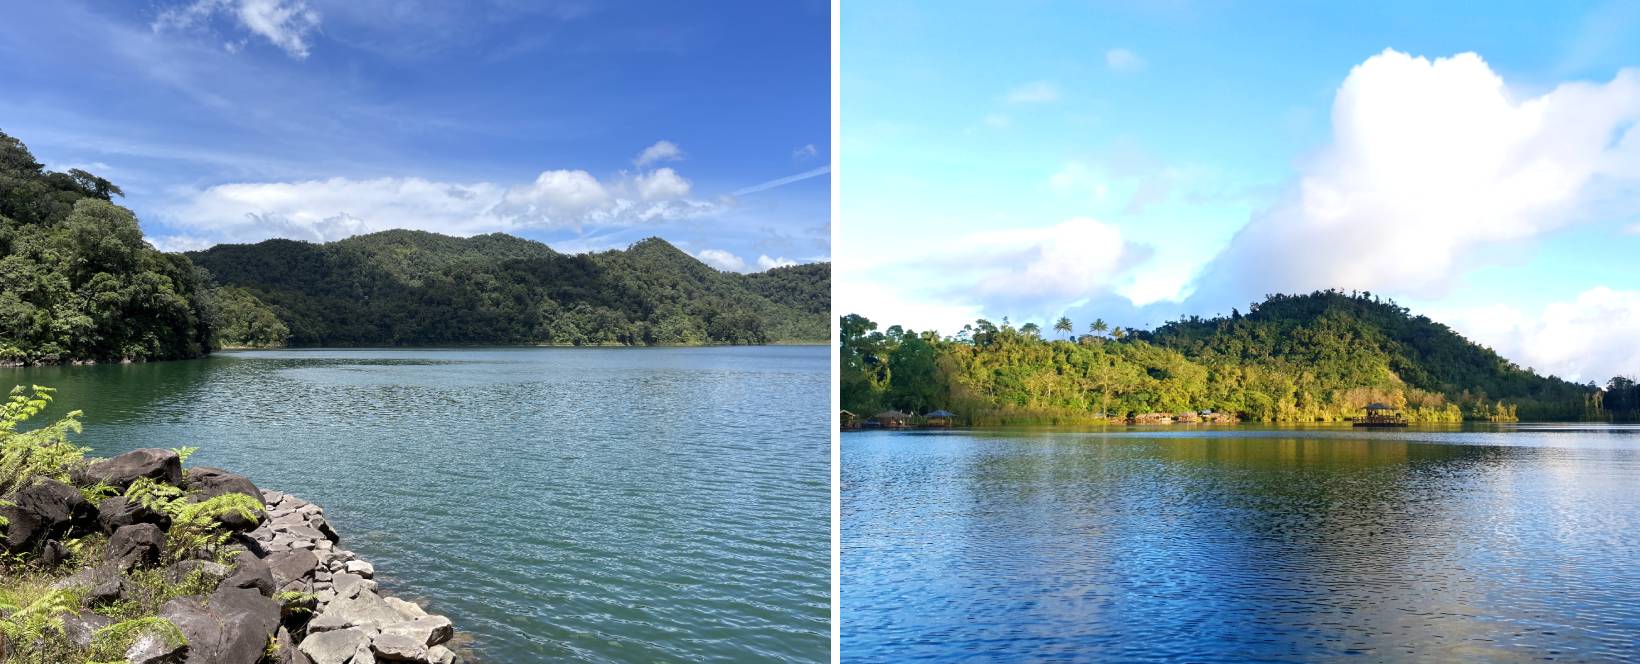 Balinsasayao Twin Lakes Natural Park in Sibulan - twin lakes